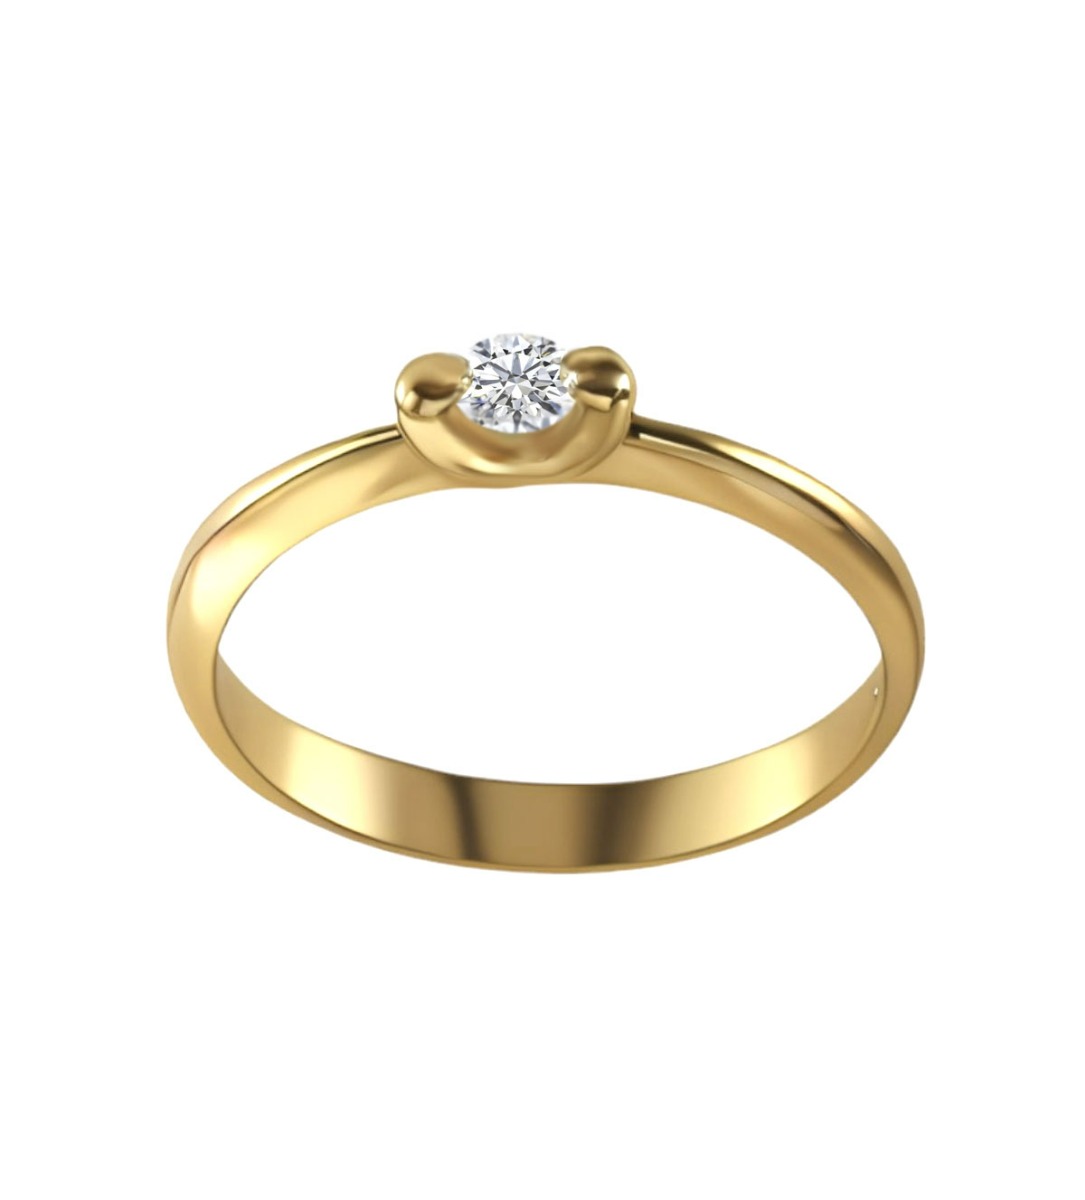 solitario oro amarillo 18K con diamante talla brillante foto frontal precio barato joyeria online 192_Z0258-OA